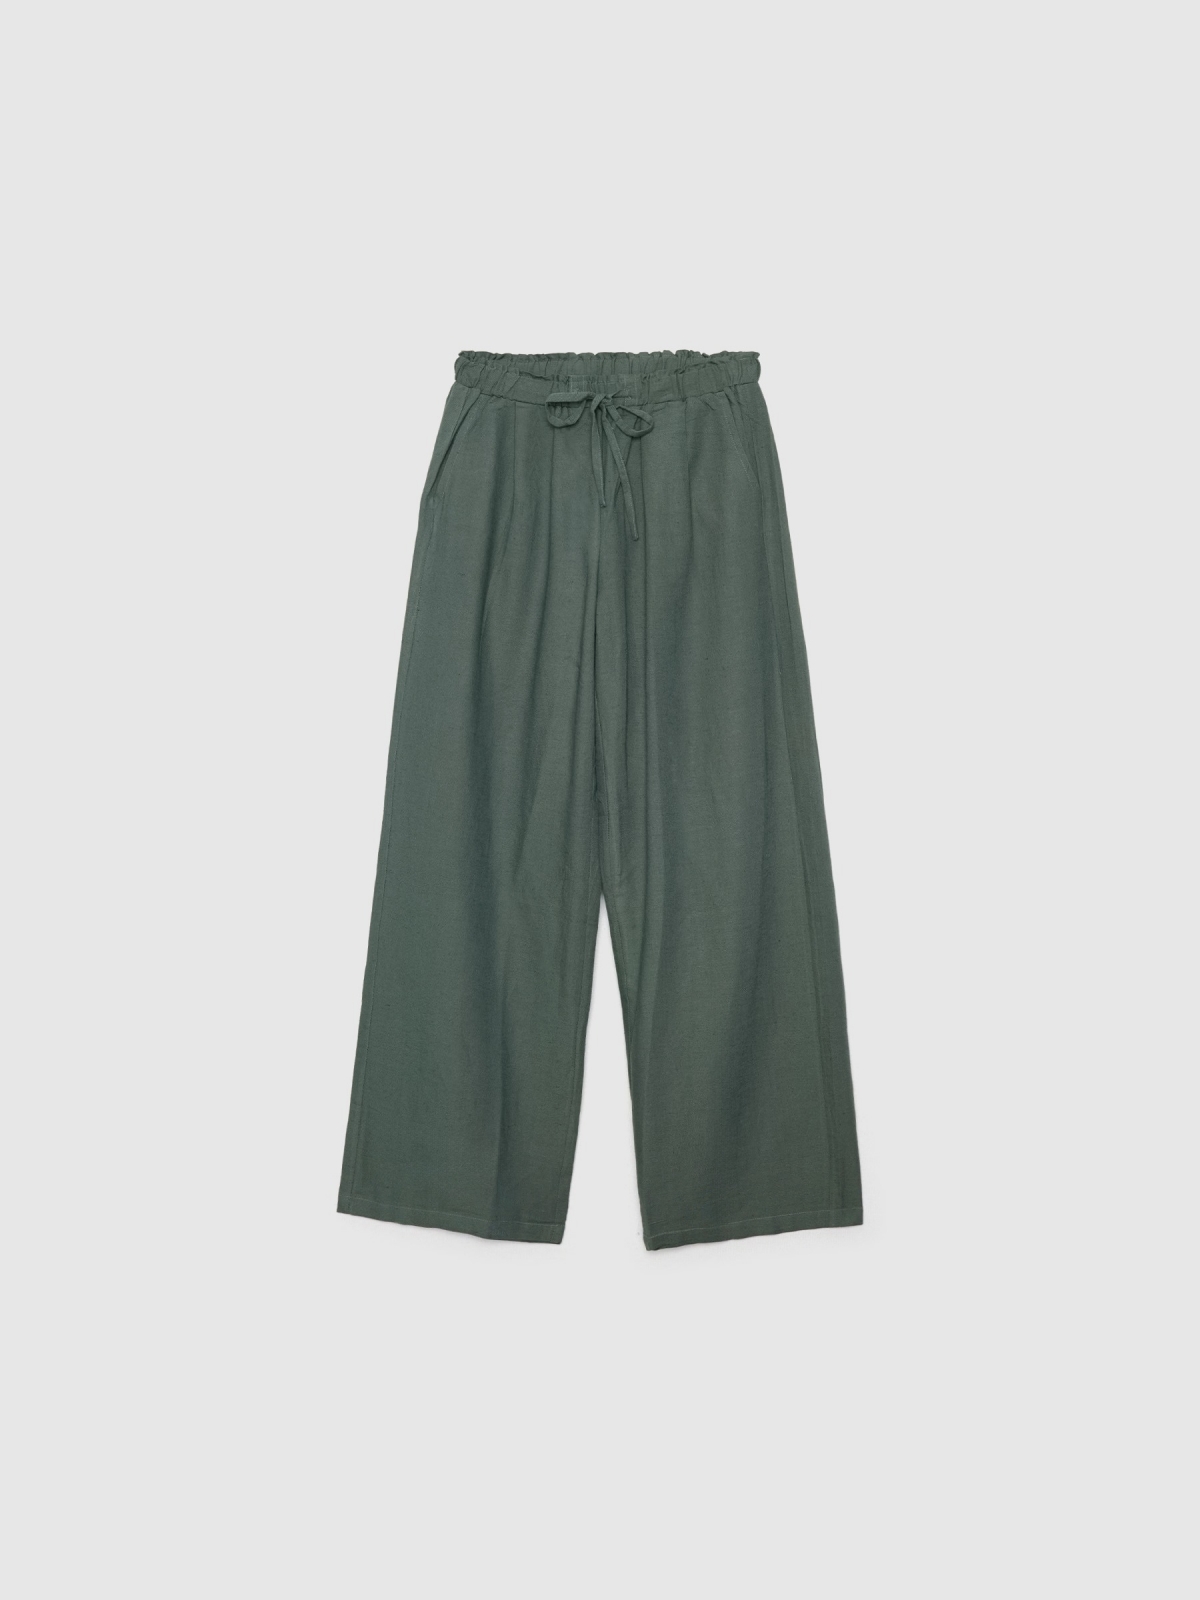  Pantalón wide-leg lino verde oscuro